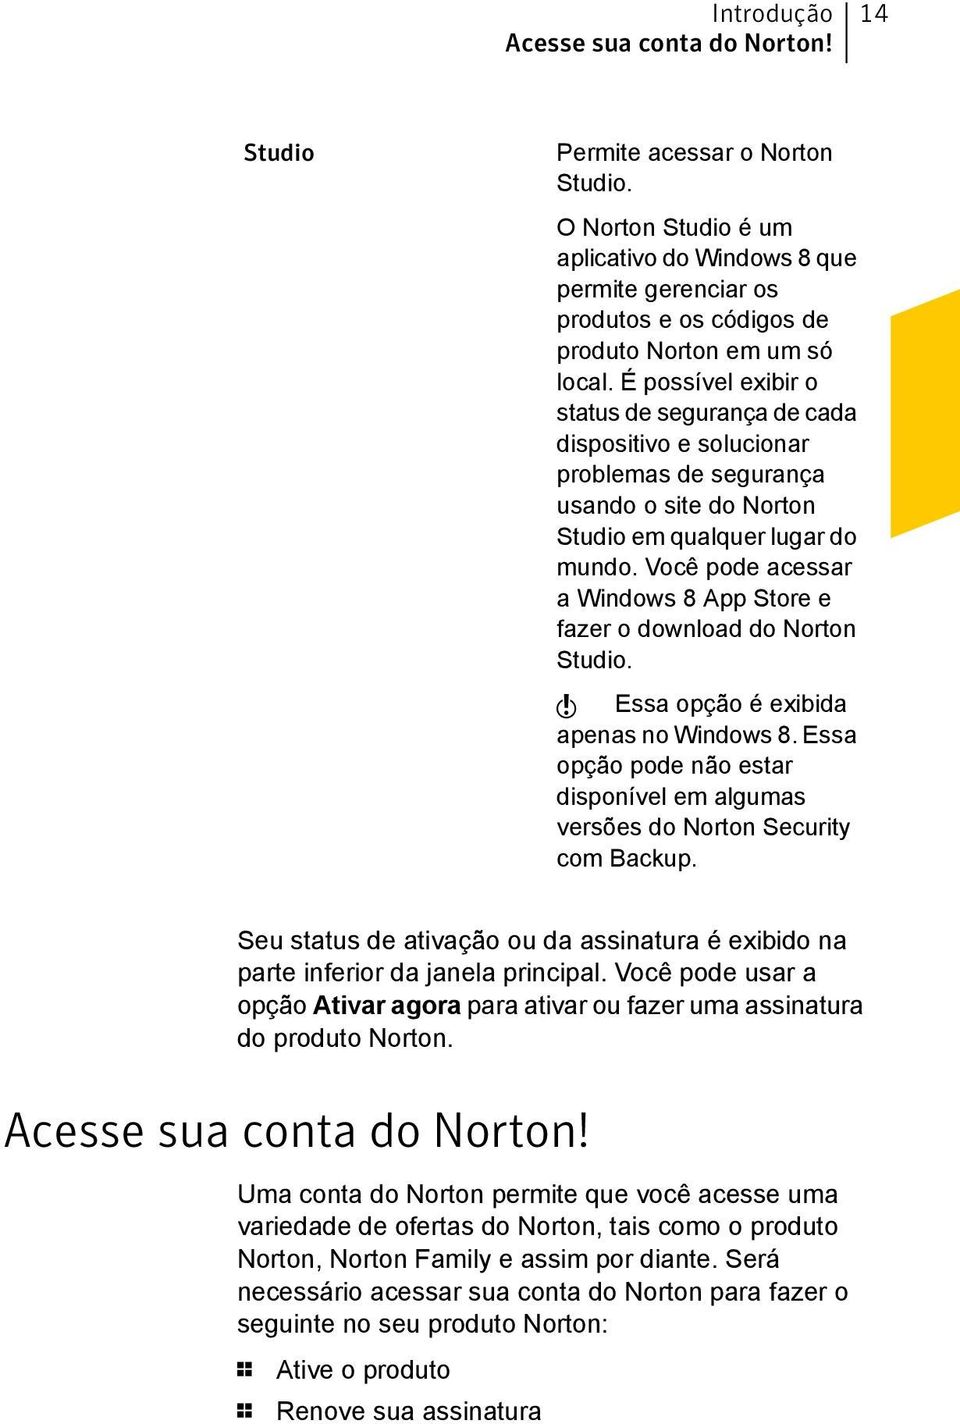 É possível exibir o status de segurança de cada dispositivo e solucionar problemas de segurança usando o site do Norton Studio em qualquer lugar do mundo.